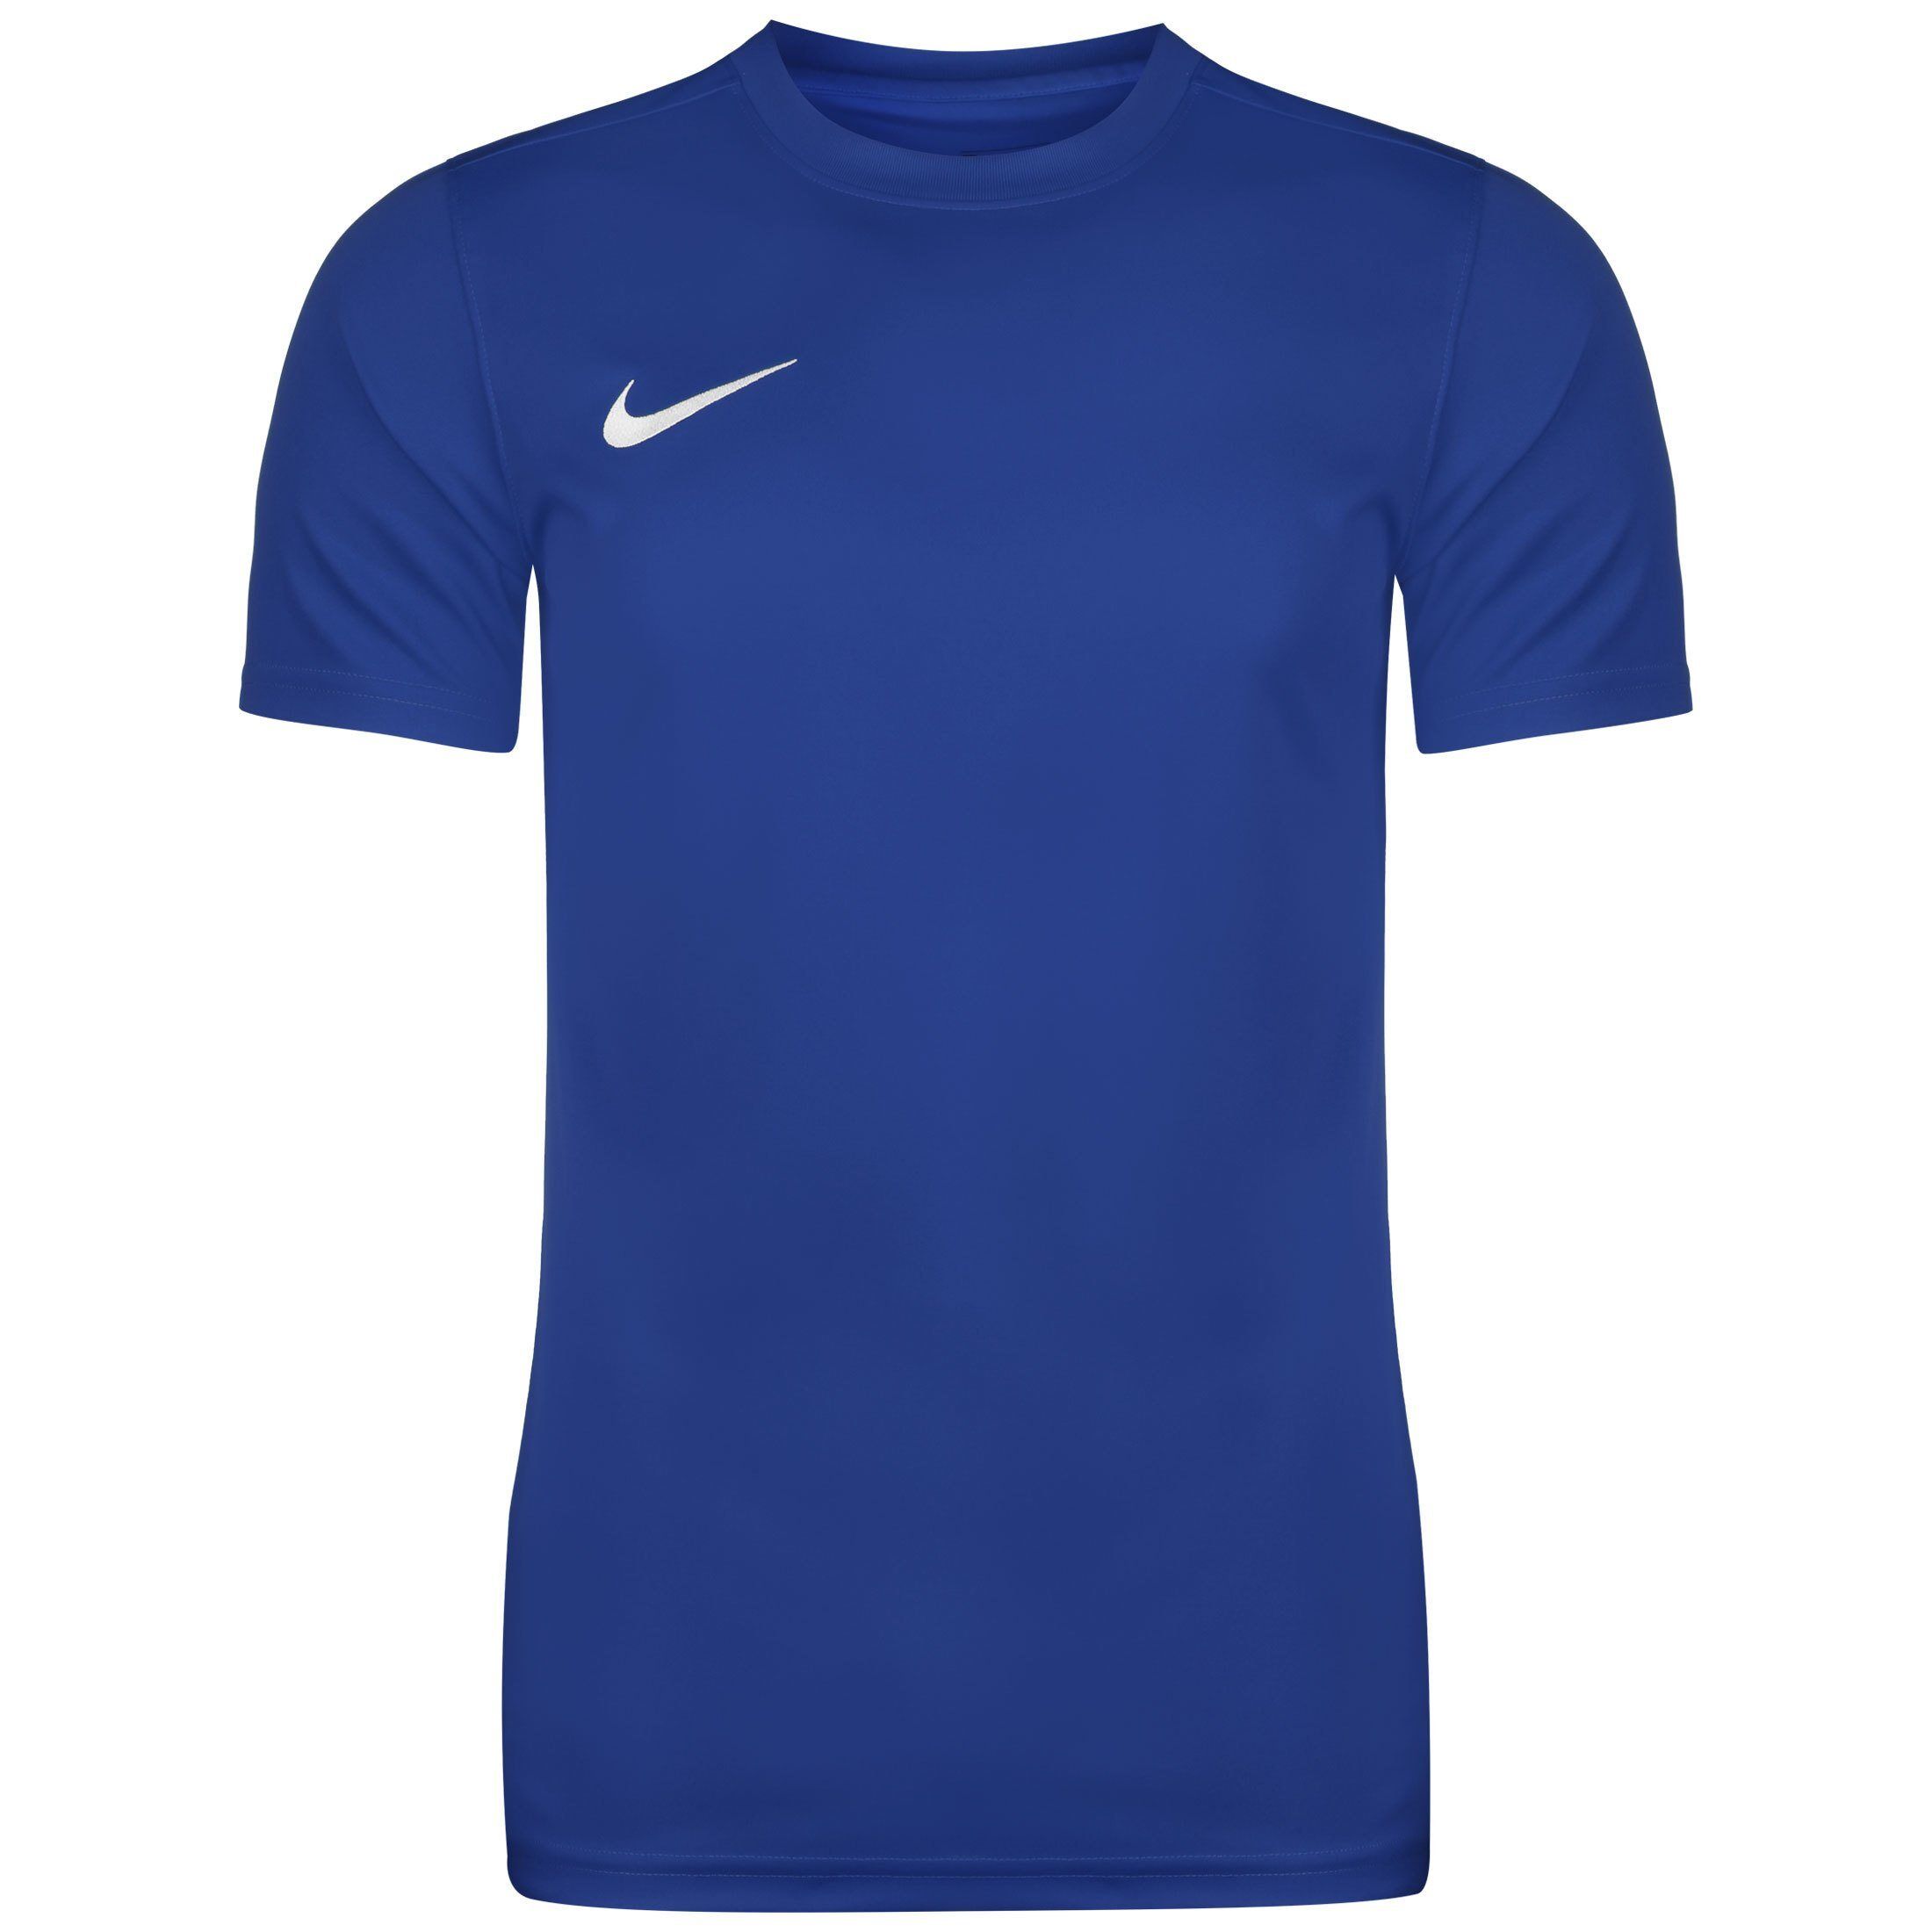 Nike Fußballtrikot »Dry Park Vii«, royal blue / white